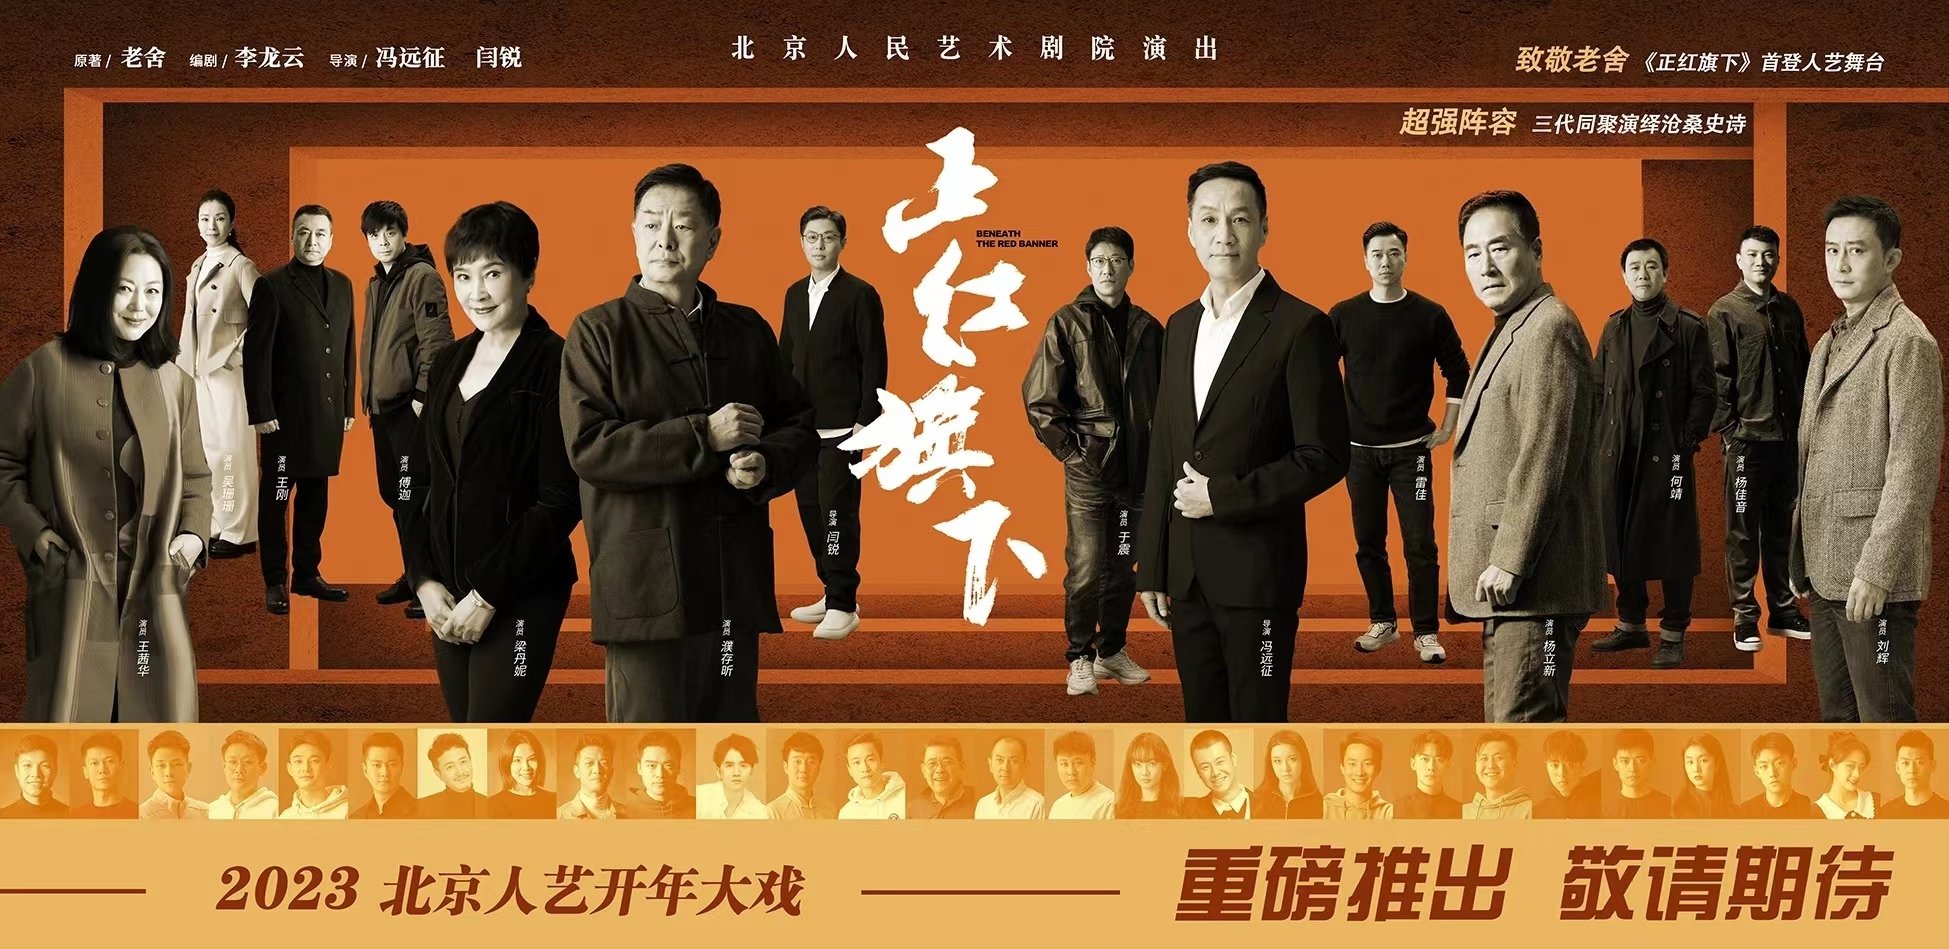 北京人艺大戏重磅开年,《正红旗下》1月18日首演